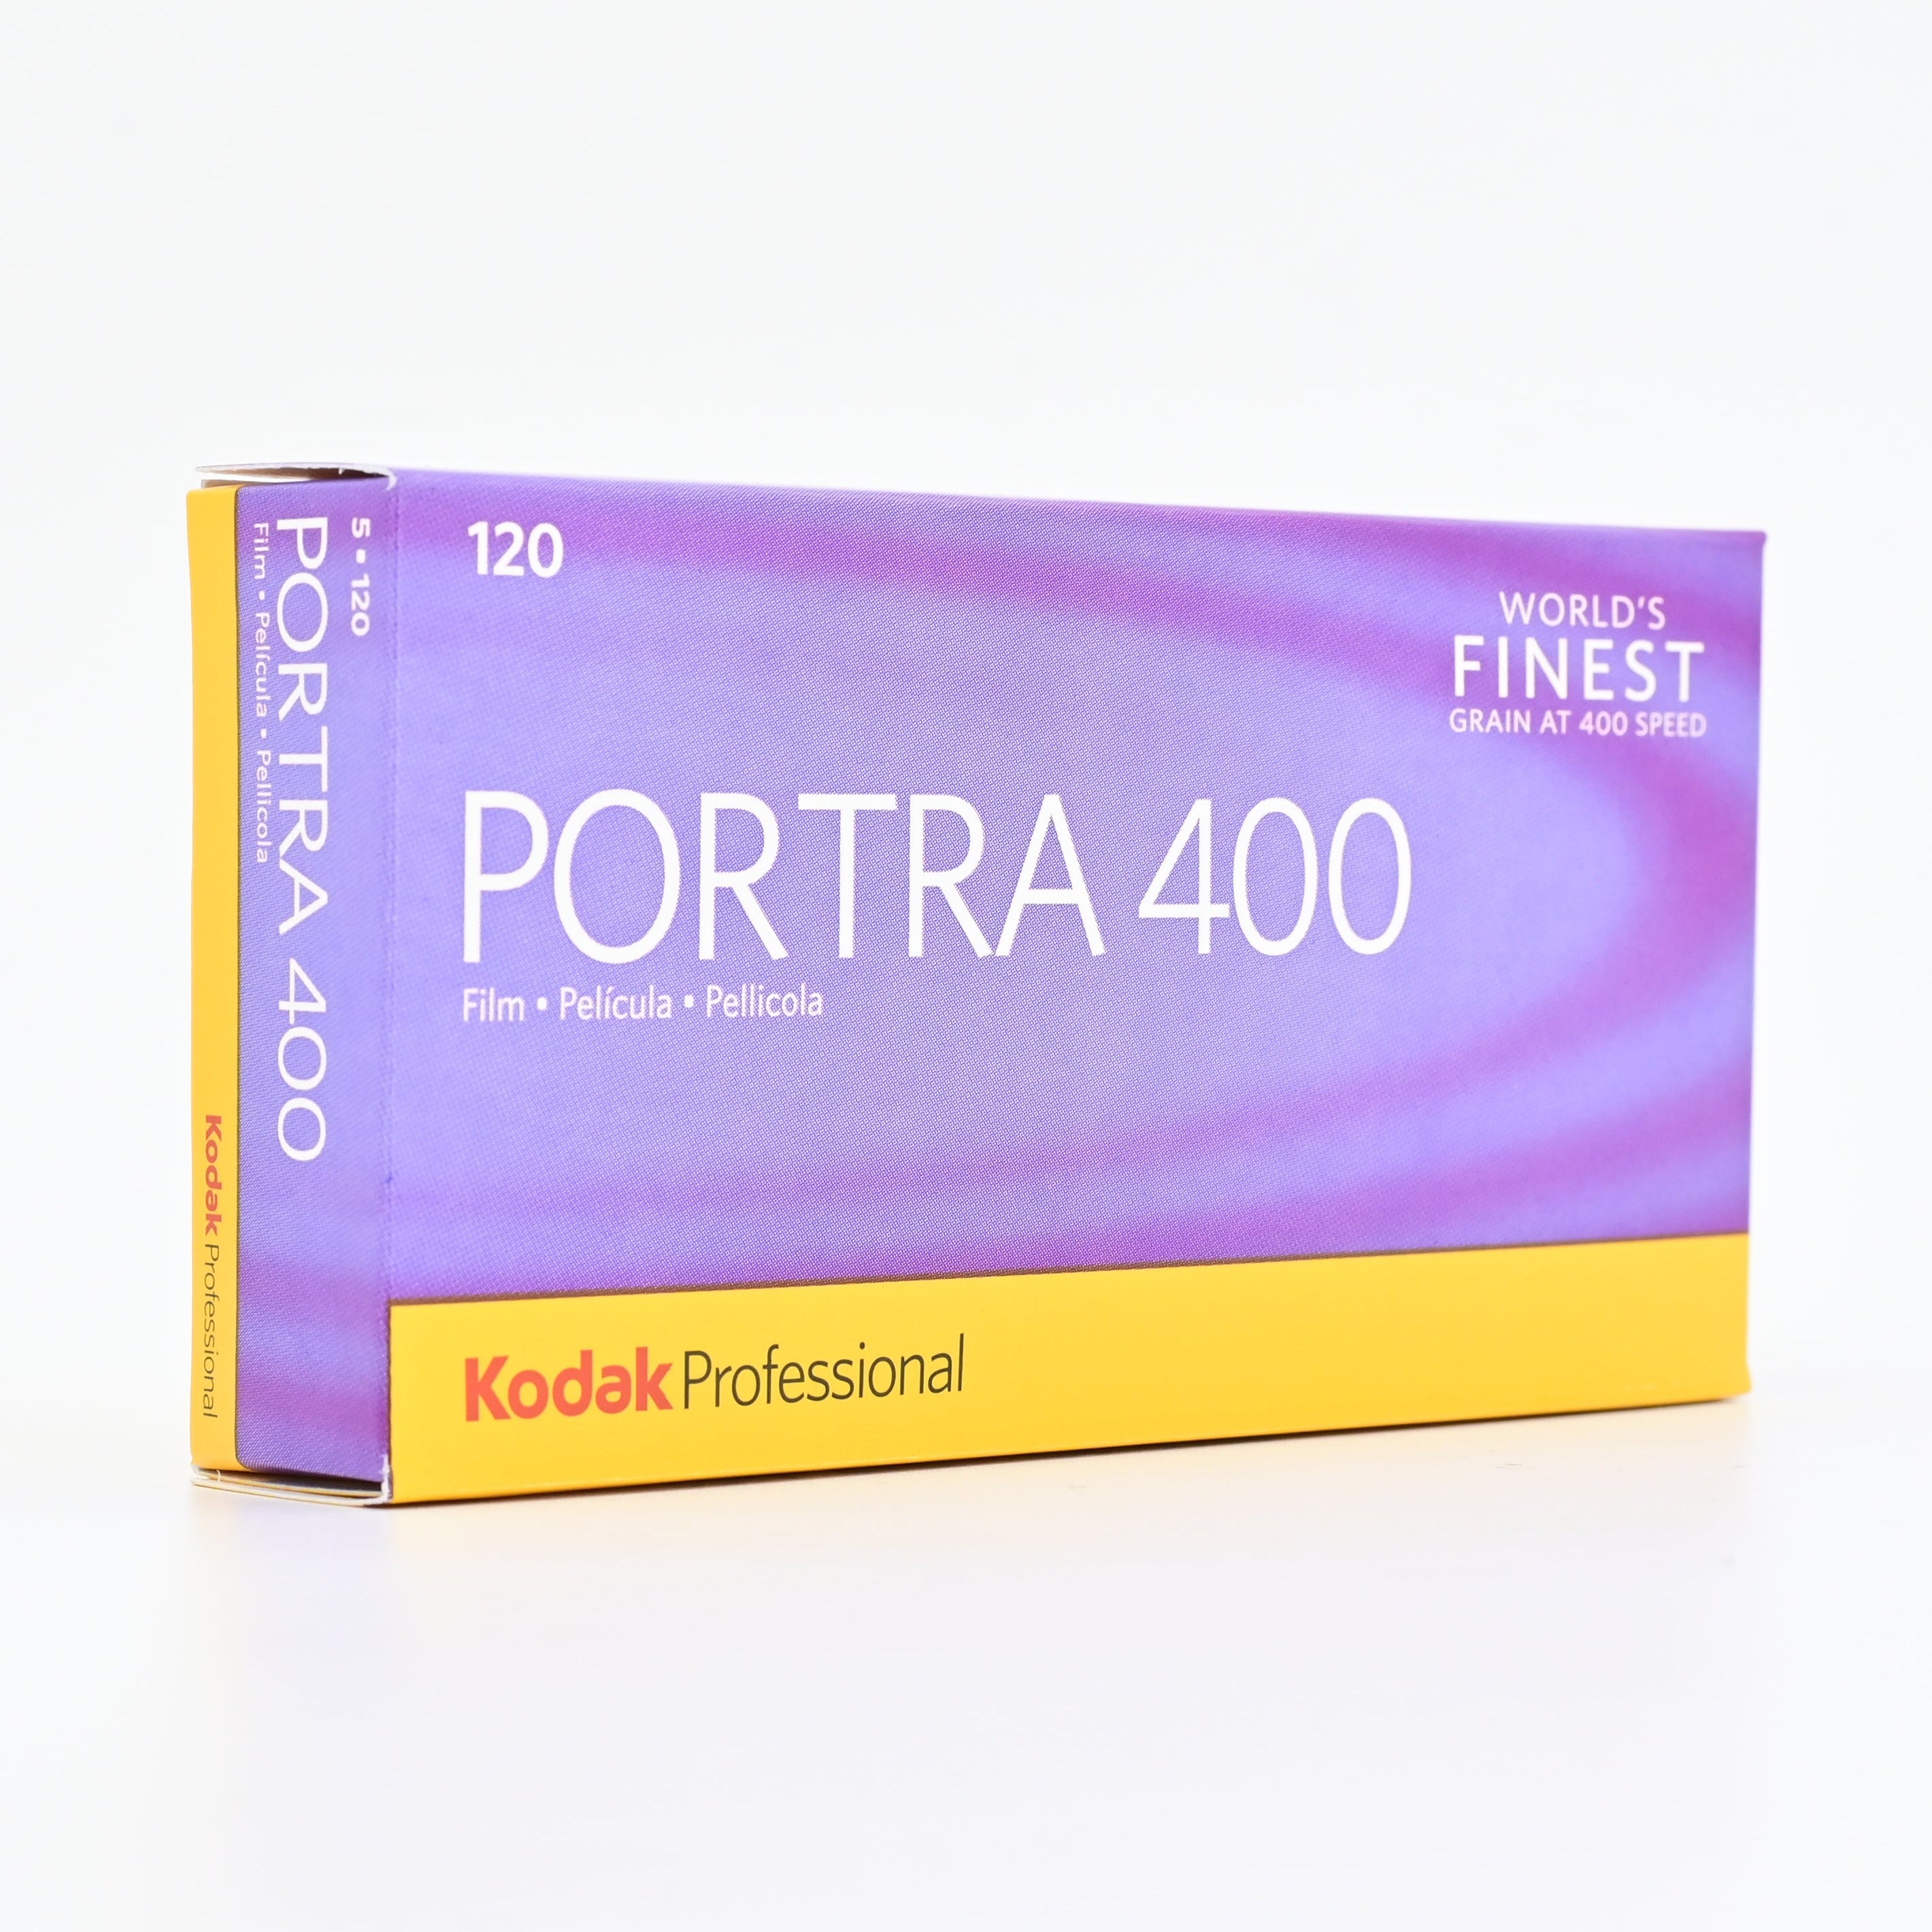 現貨] Kodak Portra 400 120 Film 熱門專業級菲林顆粒細膩人像拍攝表現膚色亮麗及保留畫面細節泛用度高適合全天候室內室外使用